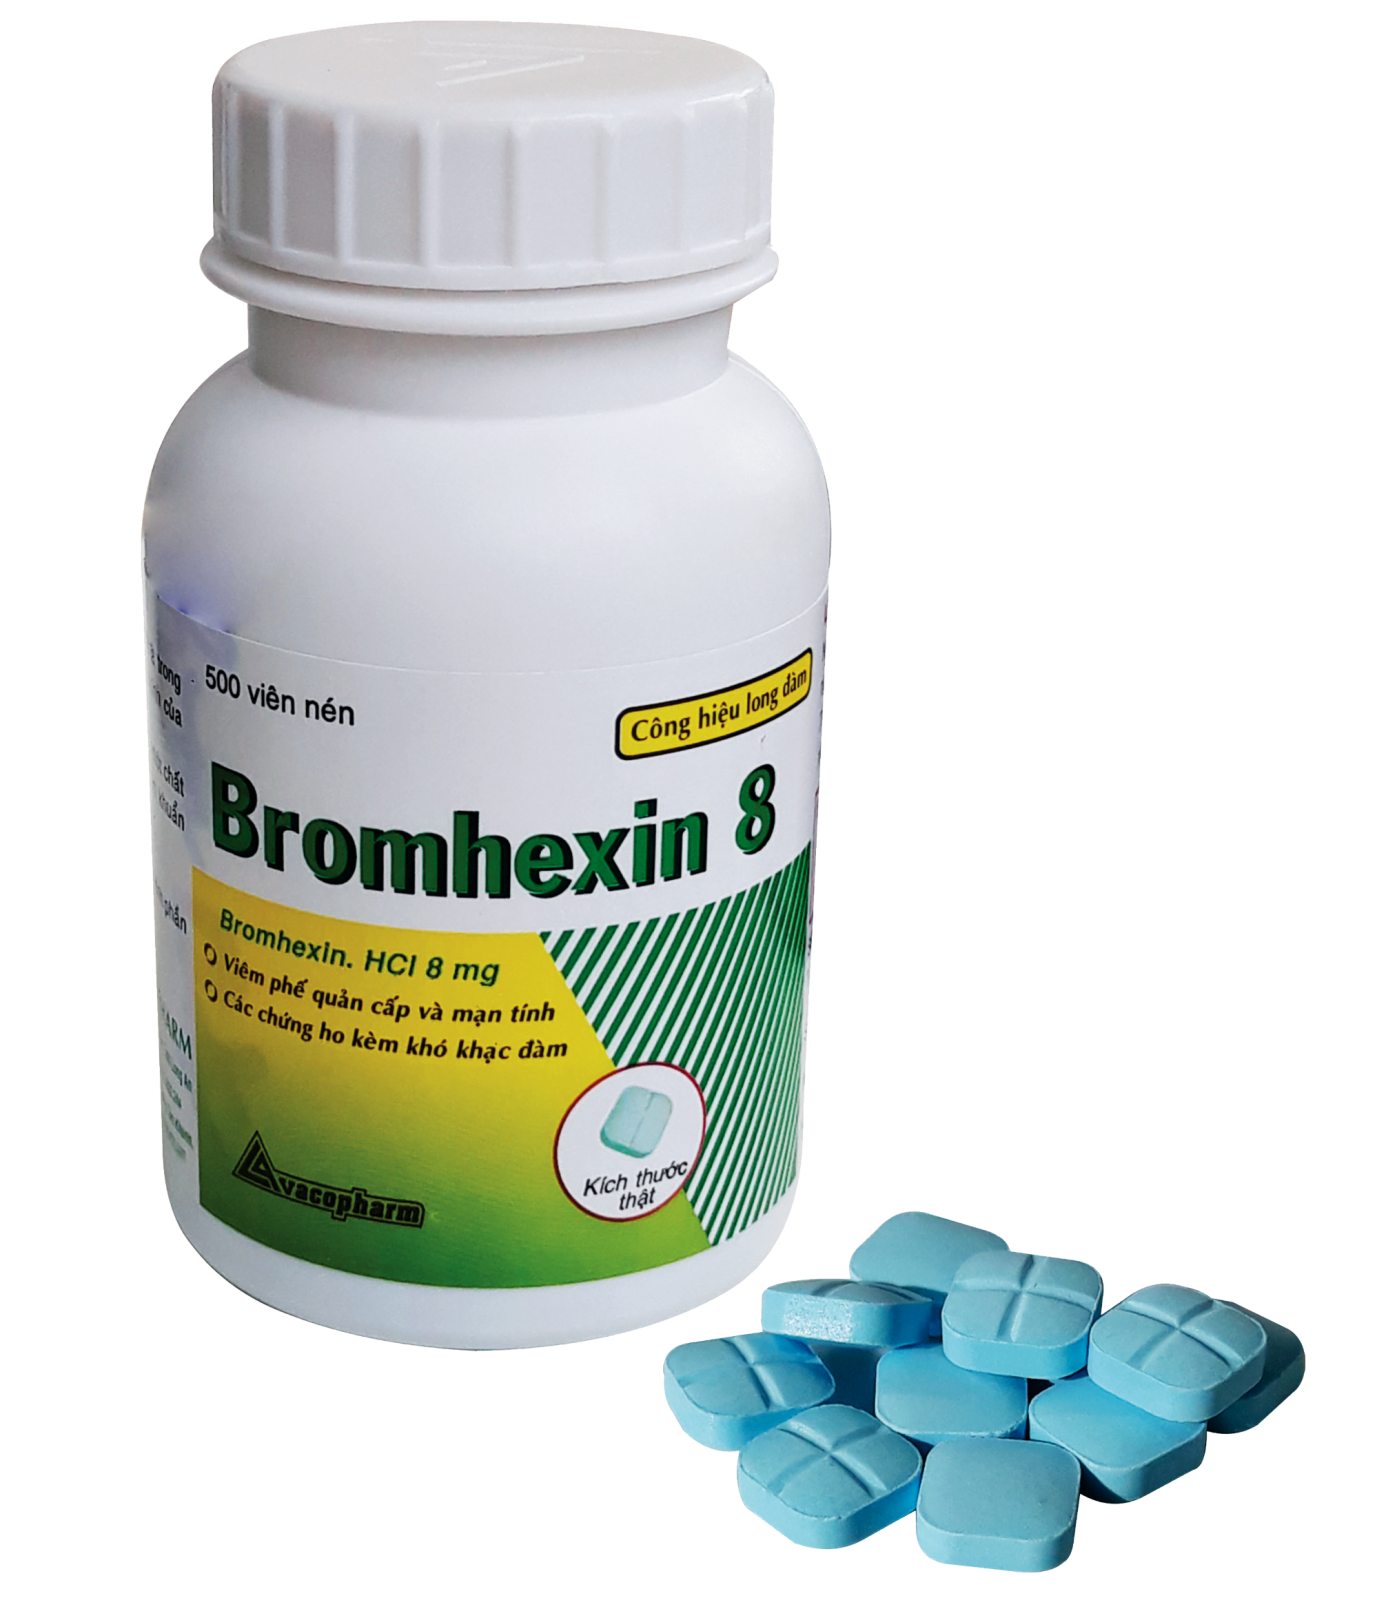 Bromhexin 8mg có tác dụng hỗ trợ điều trị triệu chứng ho khan không?
